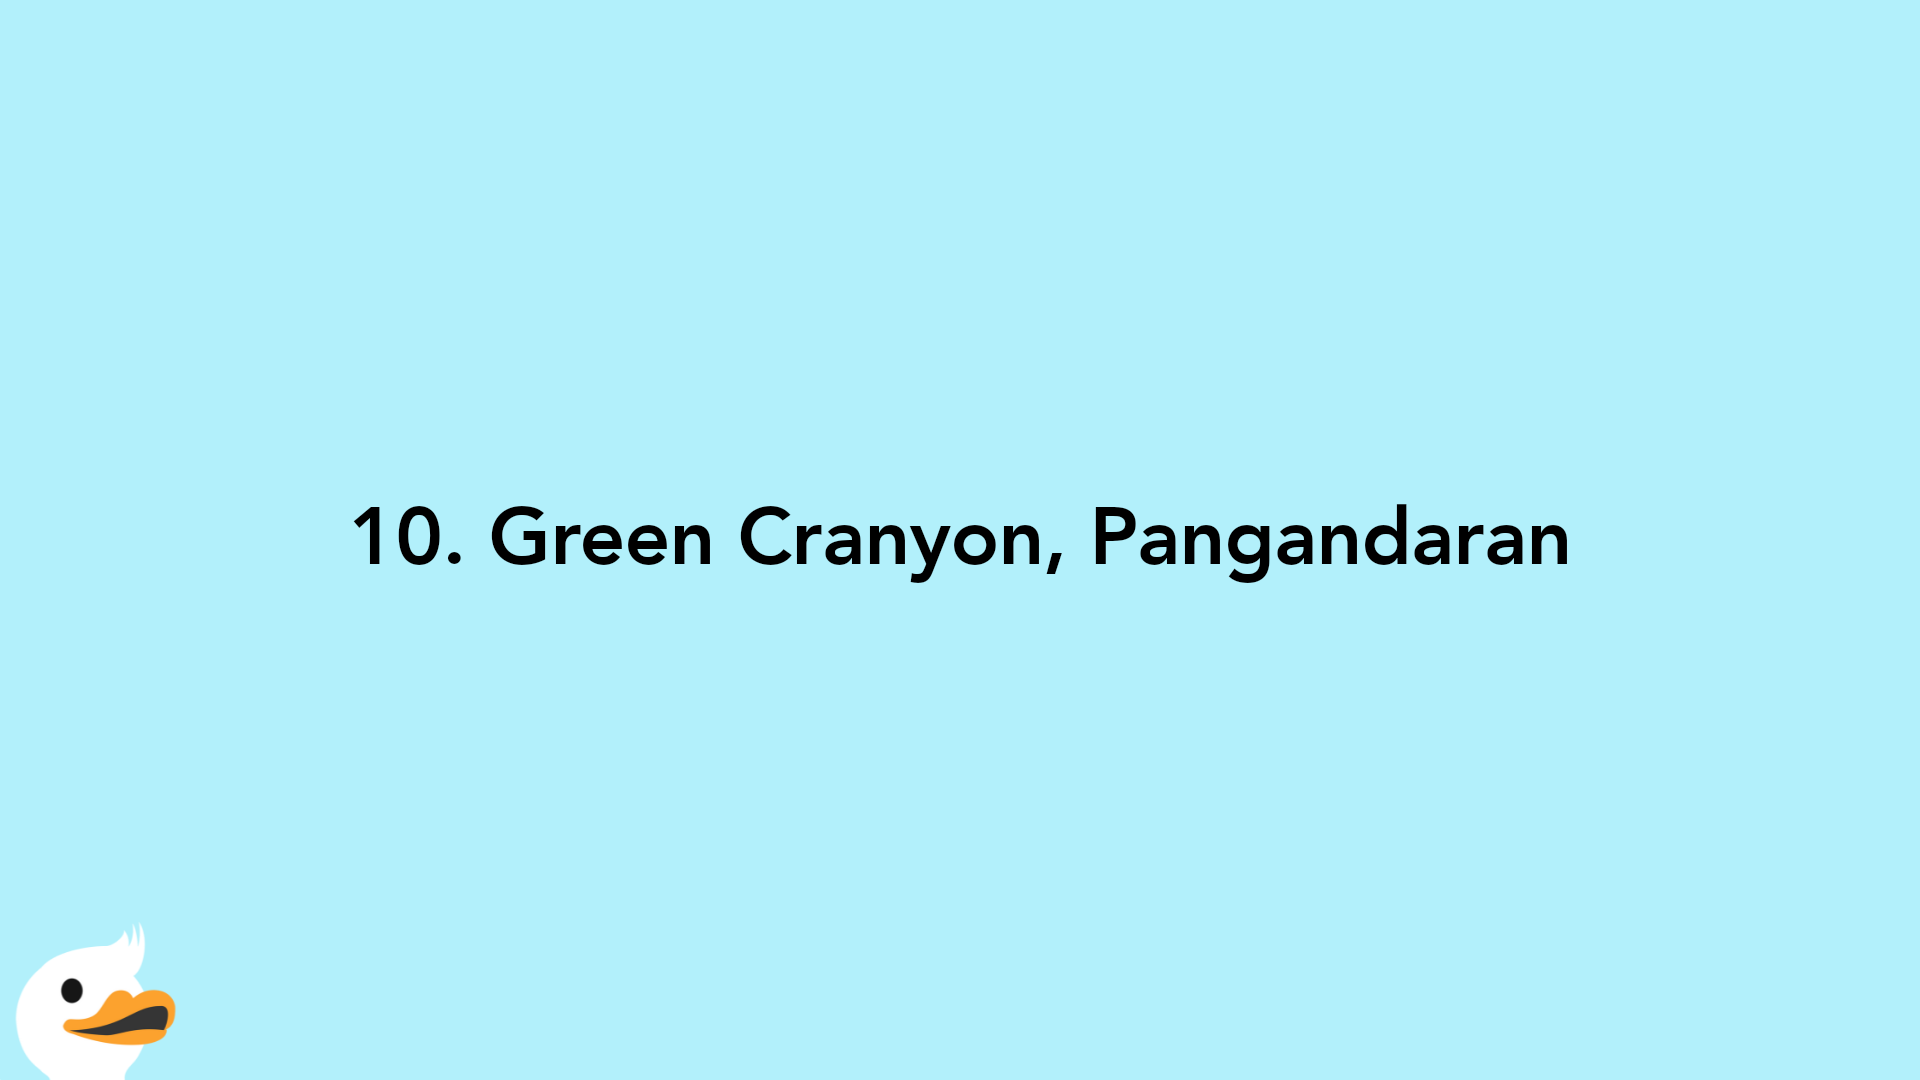 10. Green Cranyon, Pangandaran